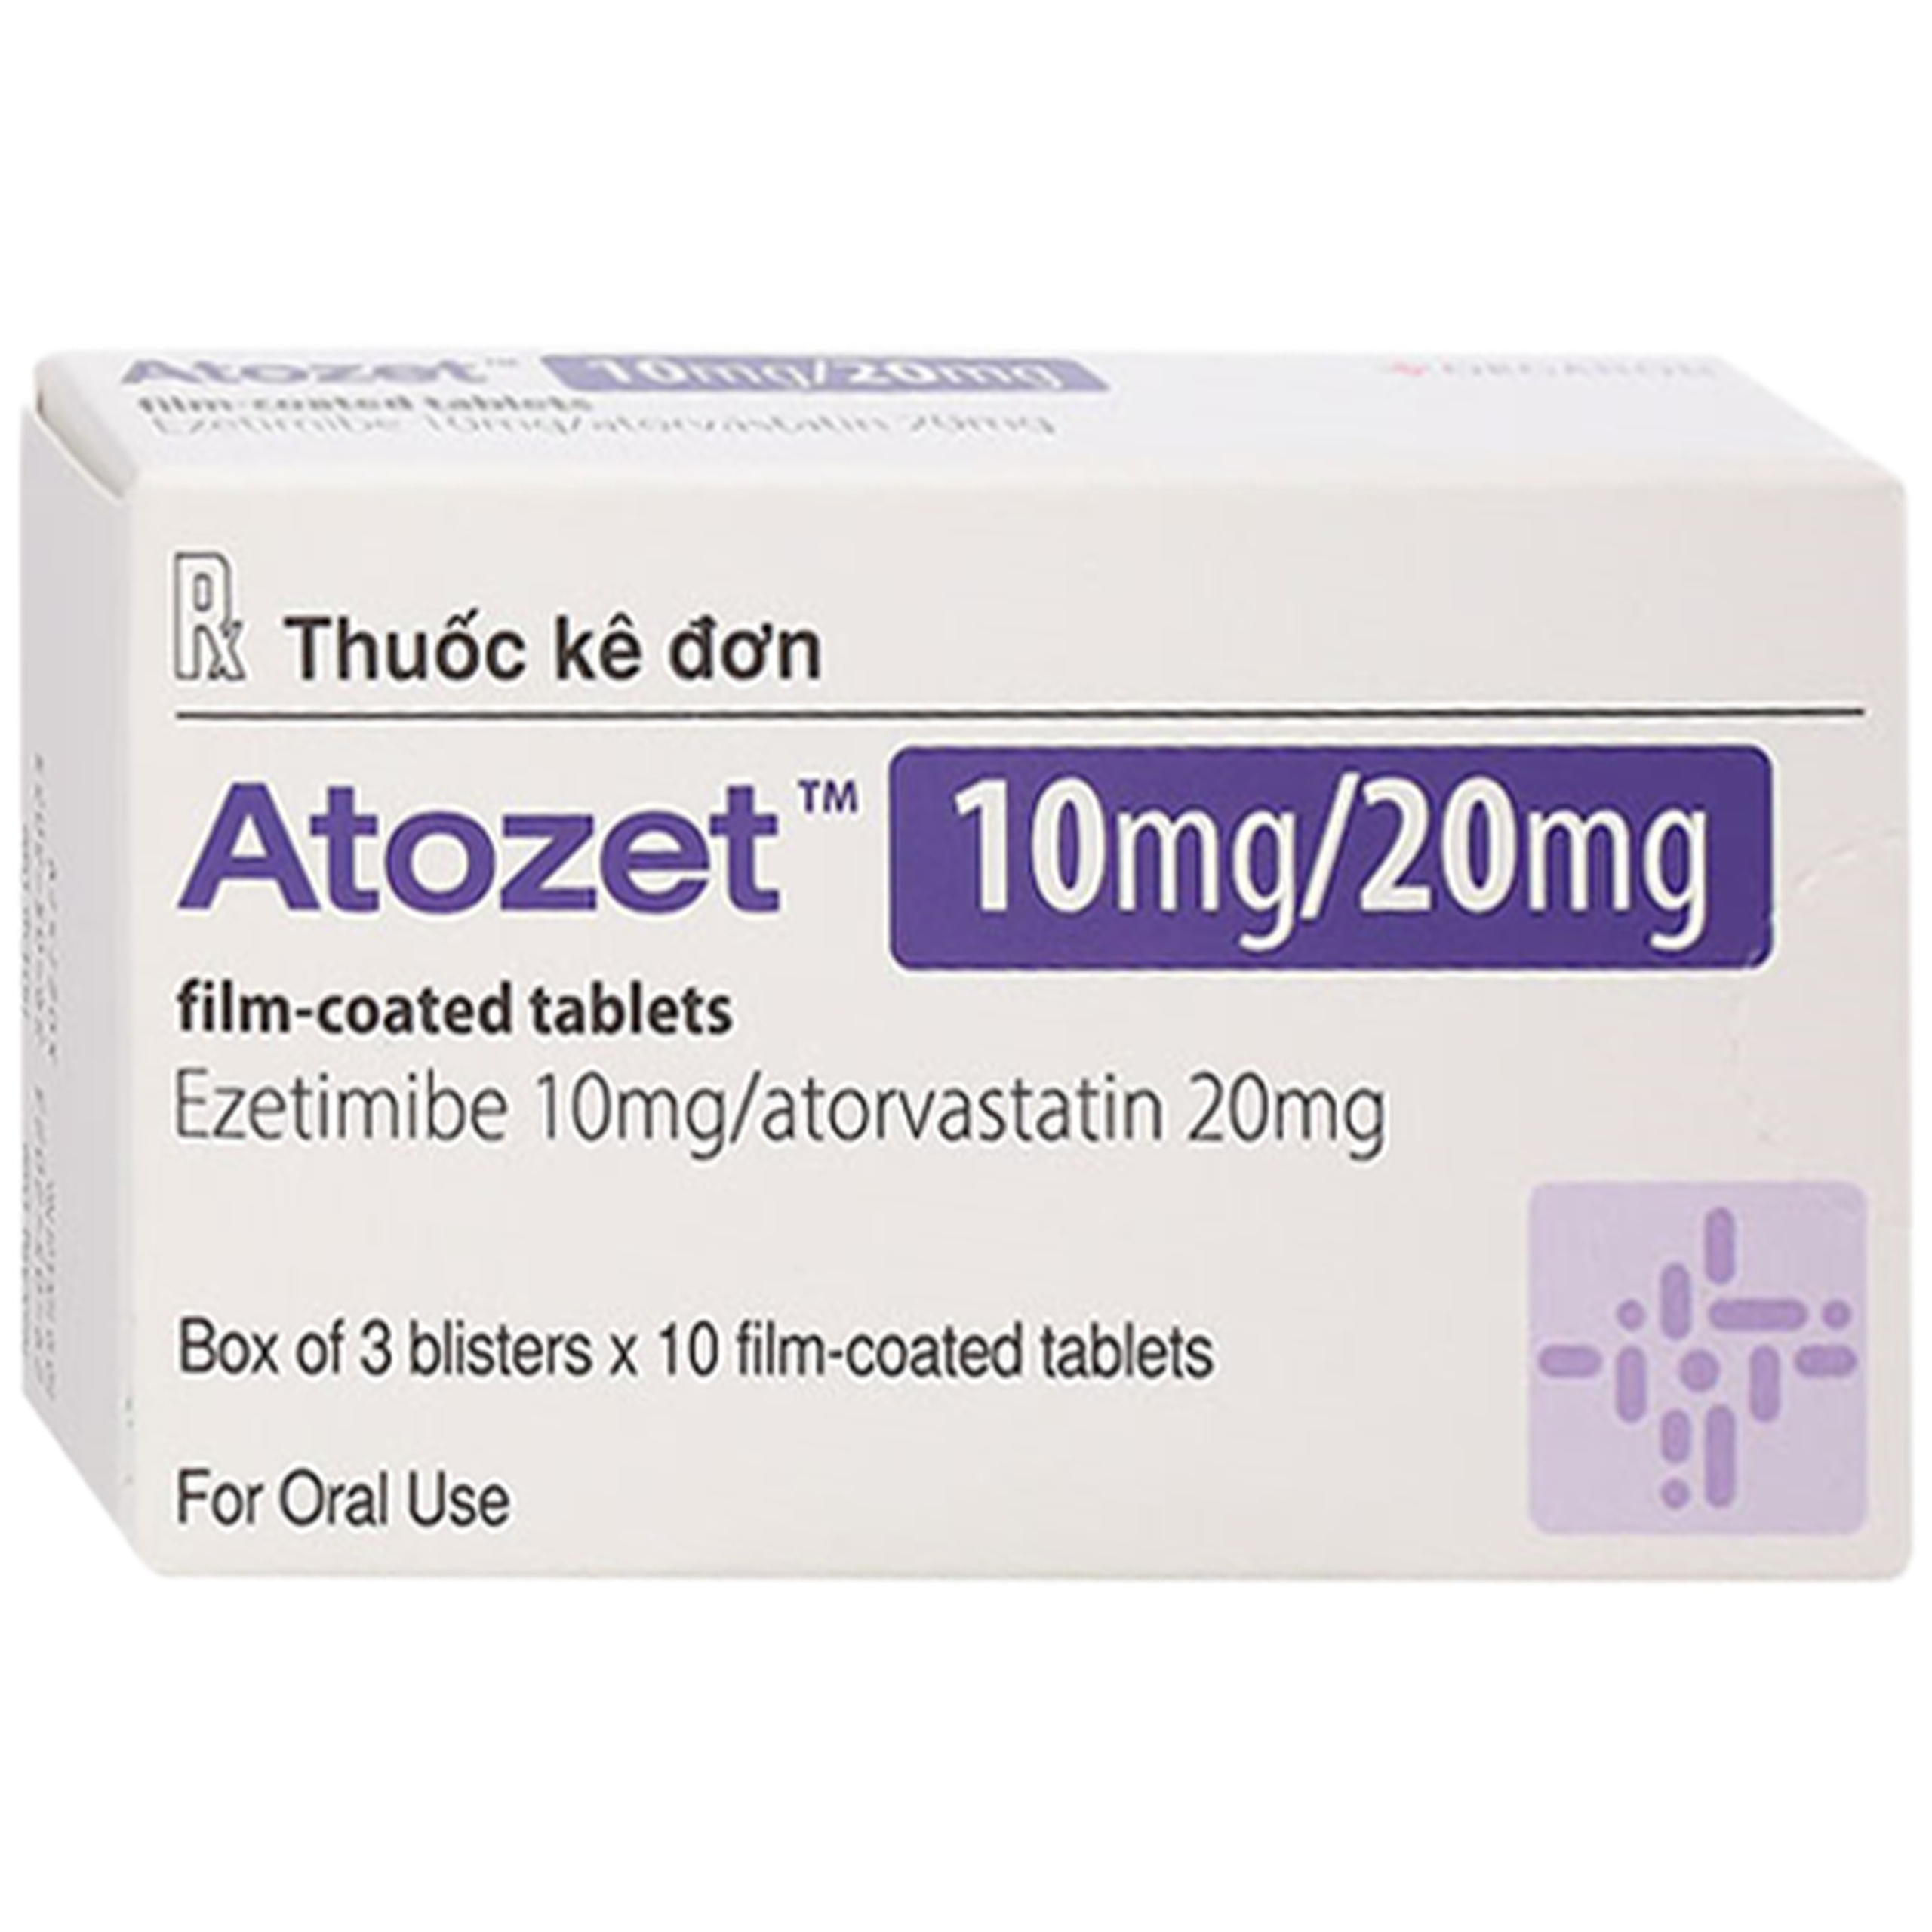 Thuốc Atozet 10mg/20mg MSD phòng ngừa các bệnh tim mạch, điều trị tăng cholesterol máu nguyên phát (3 vỉ x 10 viên)